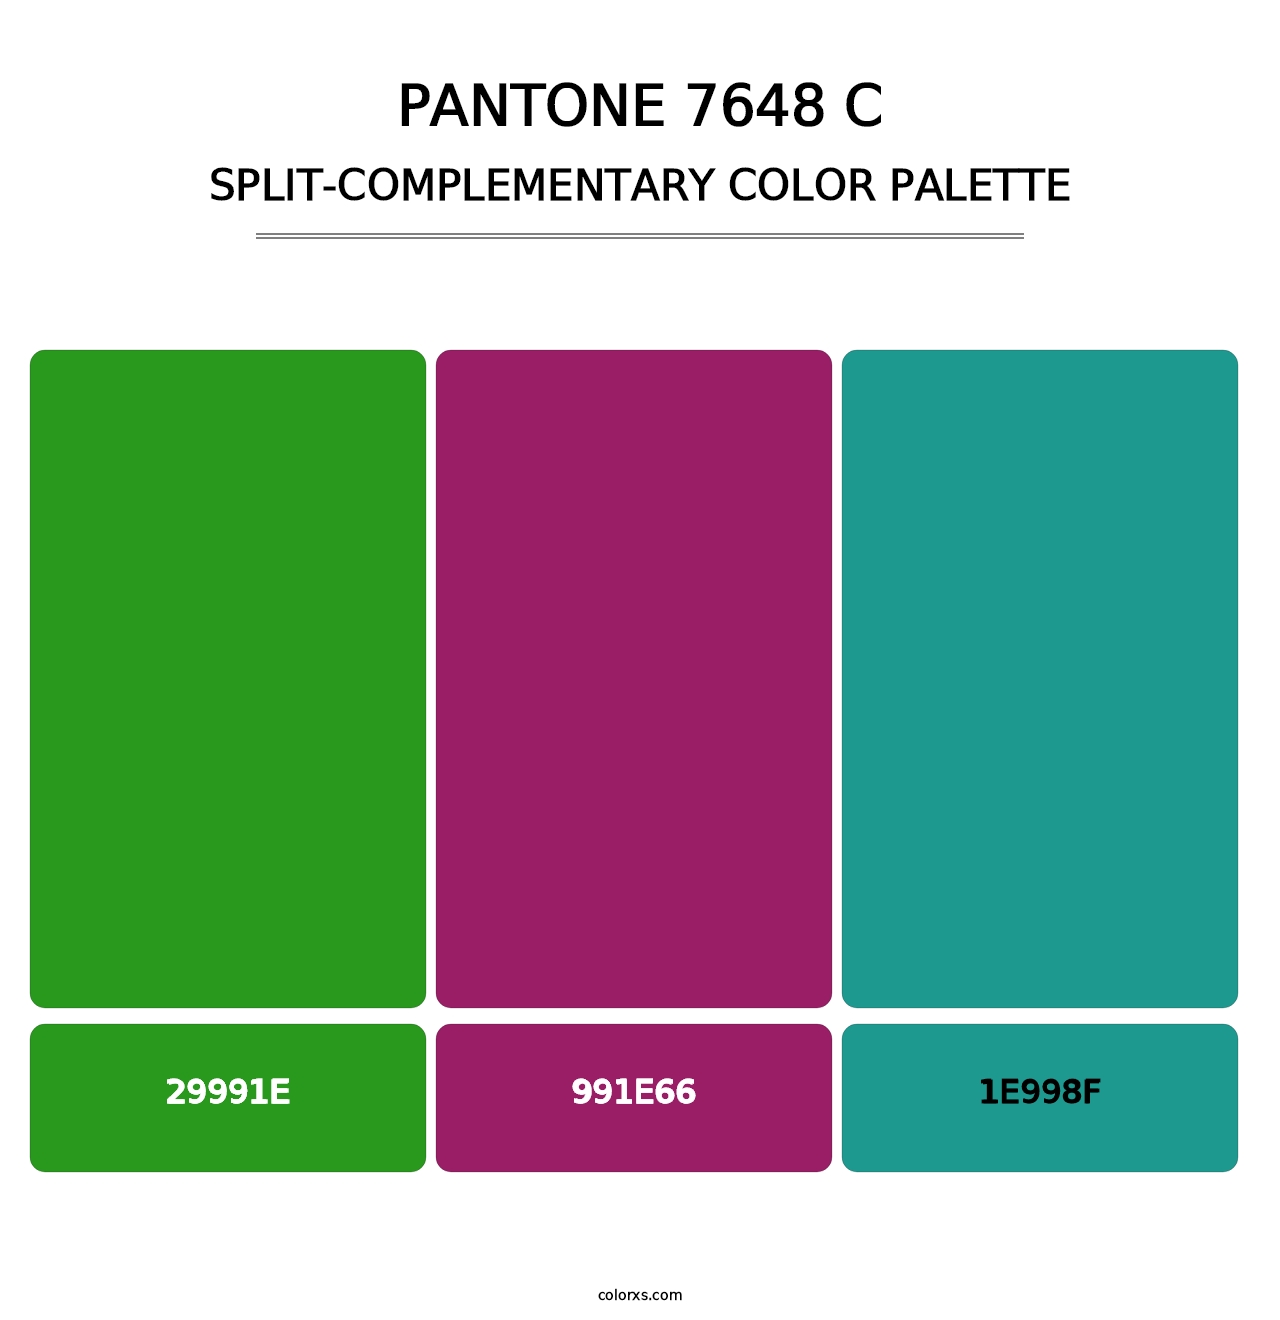 PANTONE 7648 C - Split-Complementary Color Palette